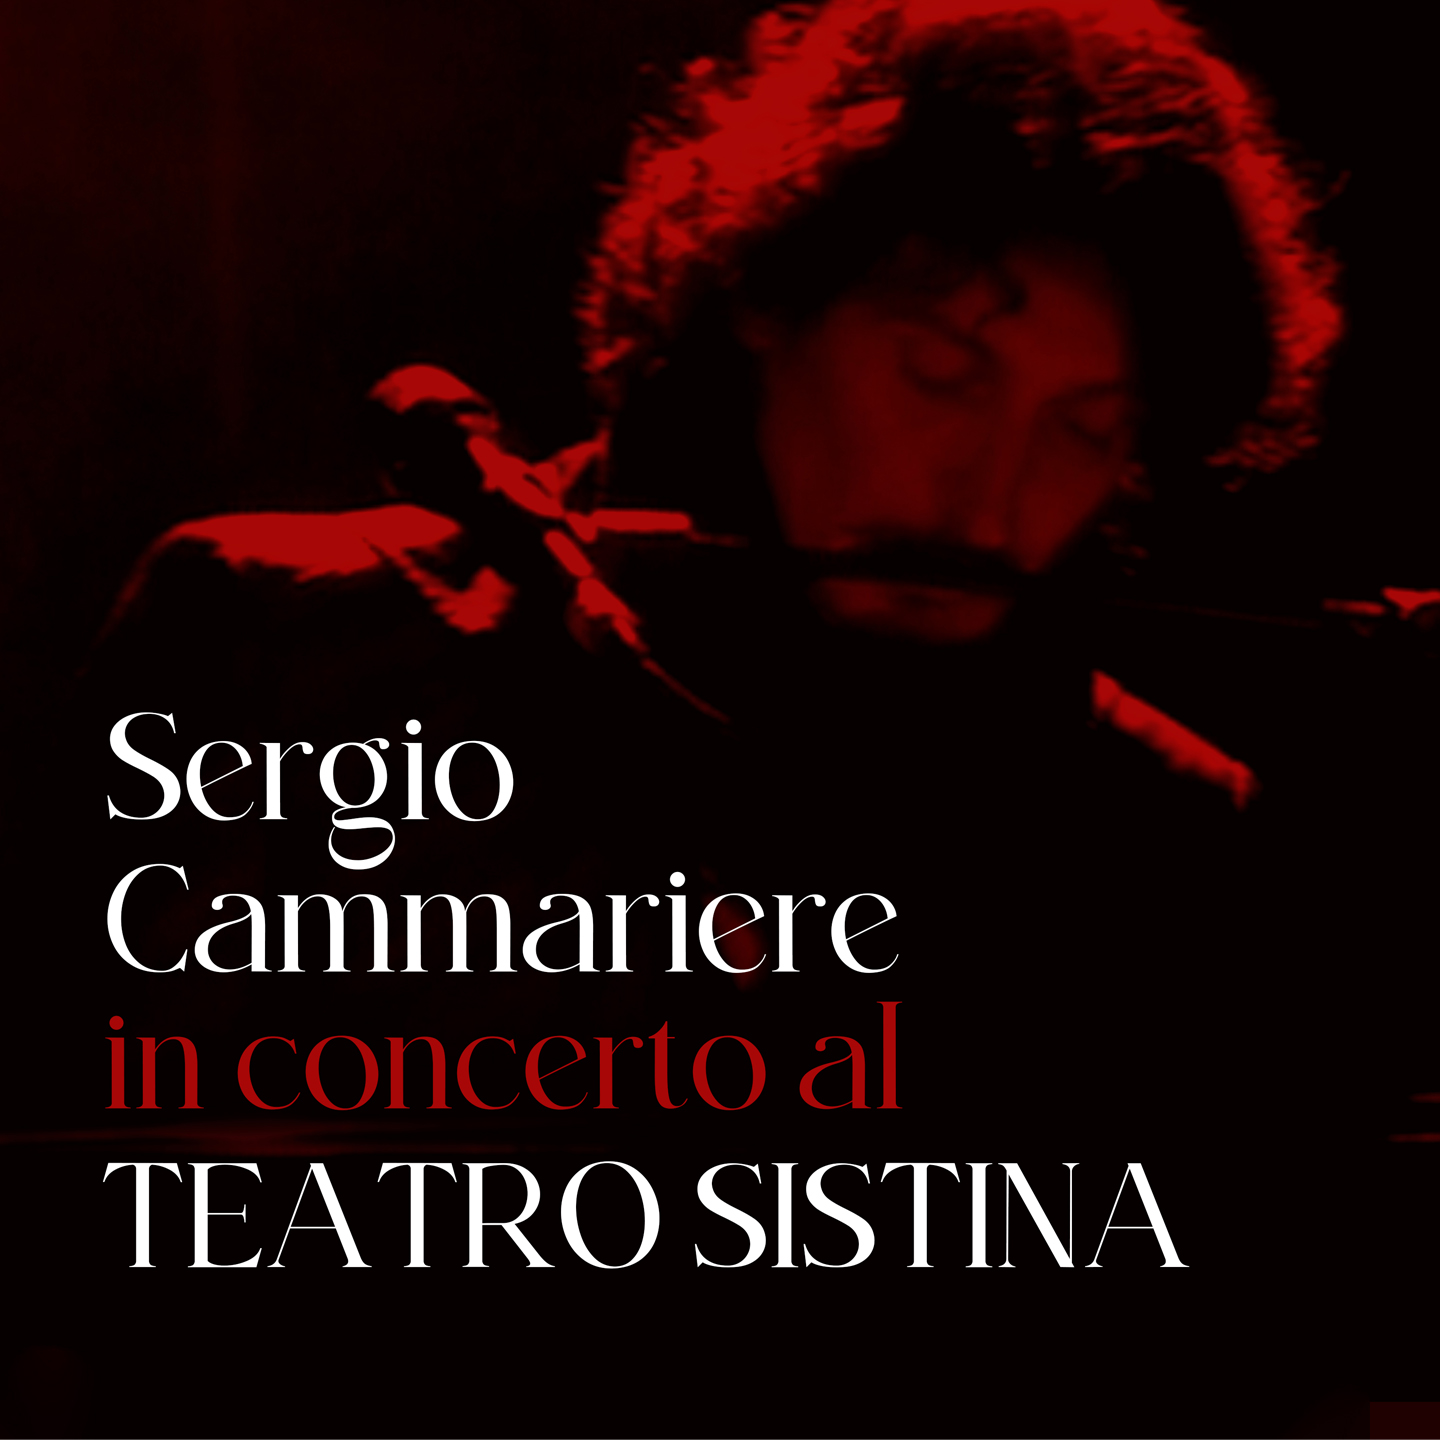 sergio-cammariere-album-e-tour---immagini-Sergio_Cammariere_cover.jpeg